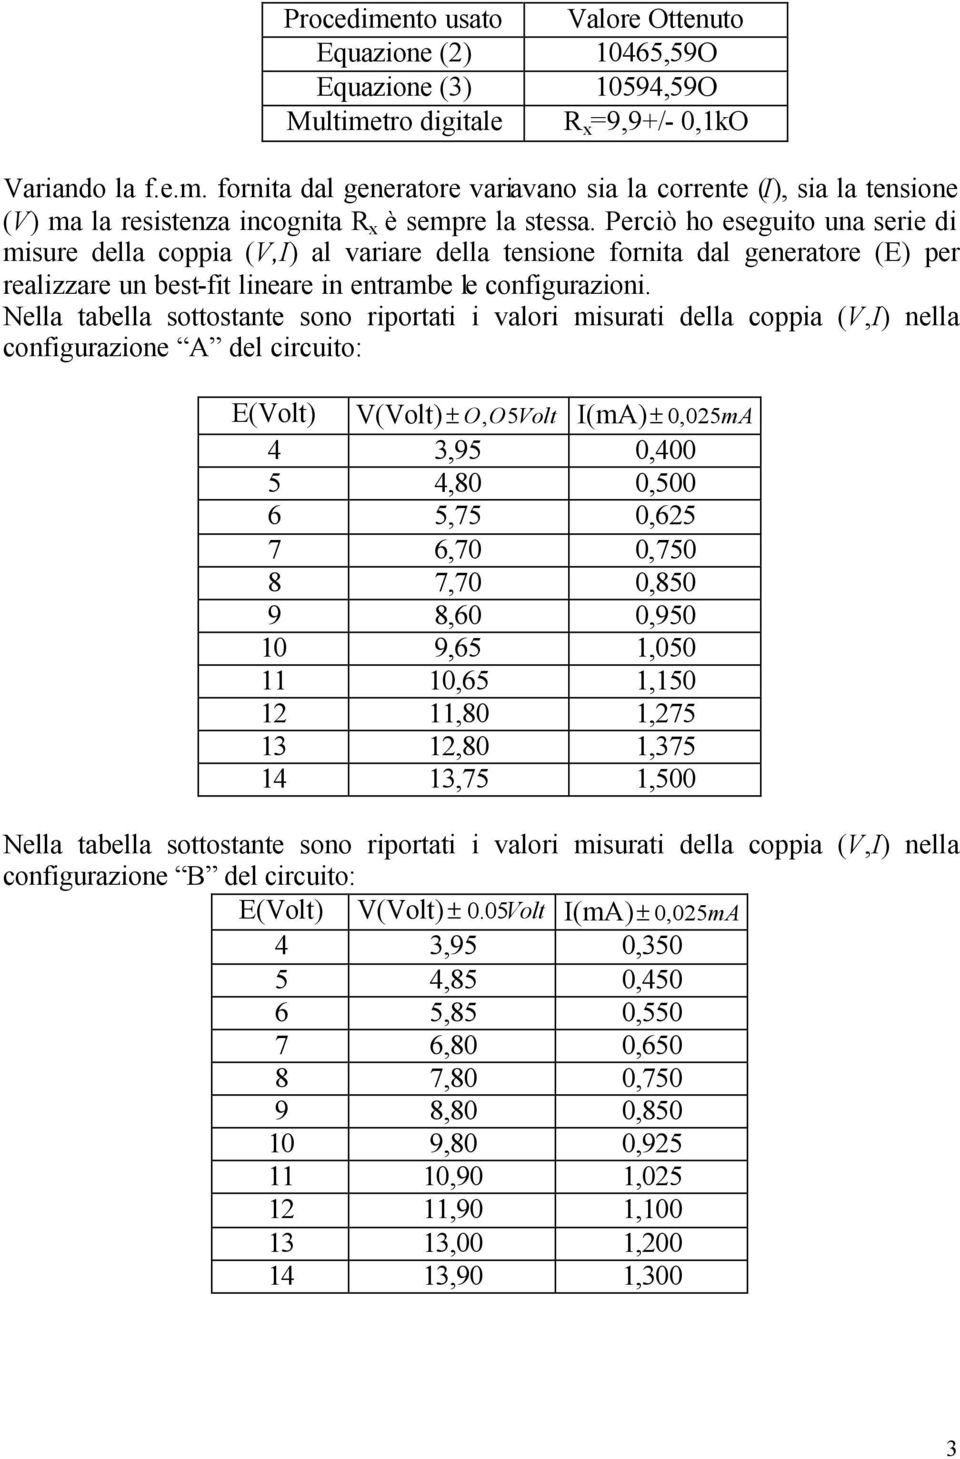 Nella tabella sottostate soo rportat valor msurat della coppa (,) ella cofgurazoe A del crcuto: E(olt) (olt) ± O, O5olt (ma) ± 0,05mA 4 3,95 0,400 5 4,80 0,500 6 5,75 0,65 7 6,70 0,750 8 7,70 0,850 9